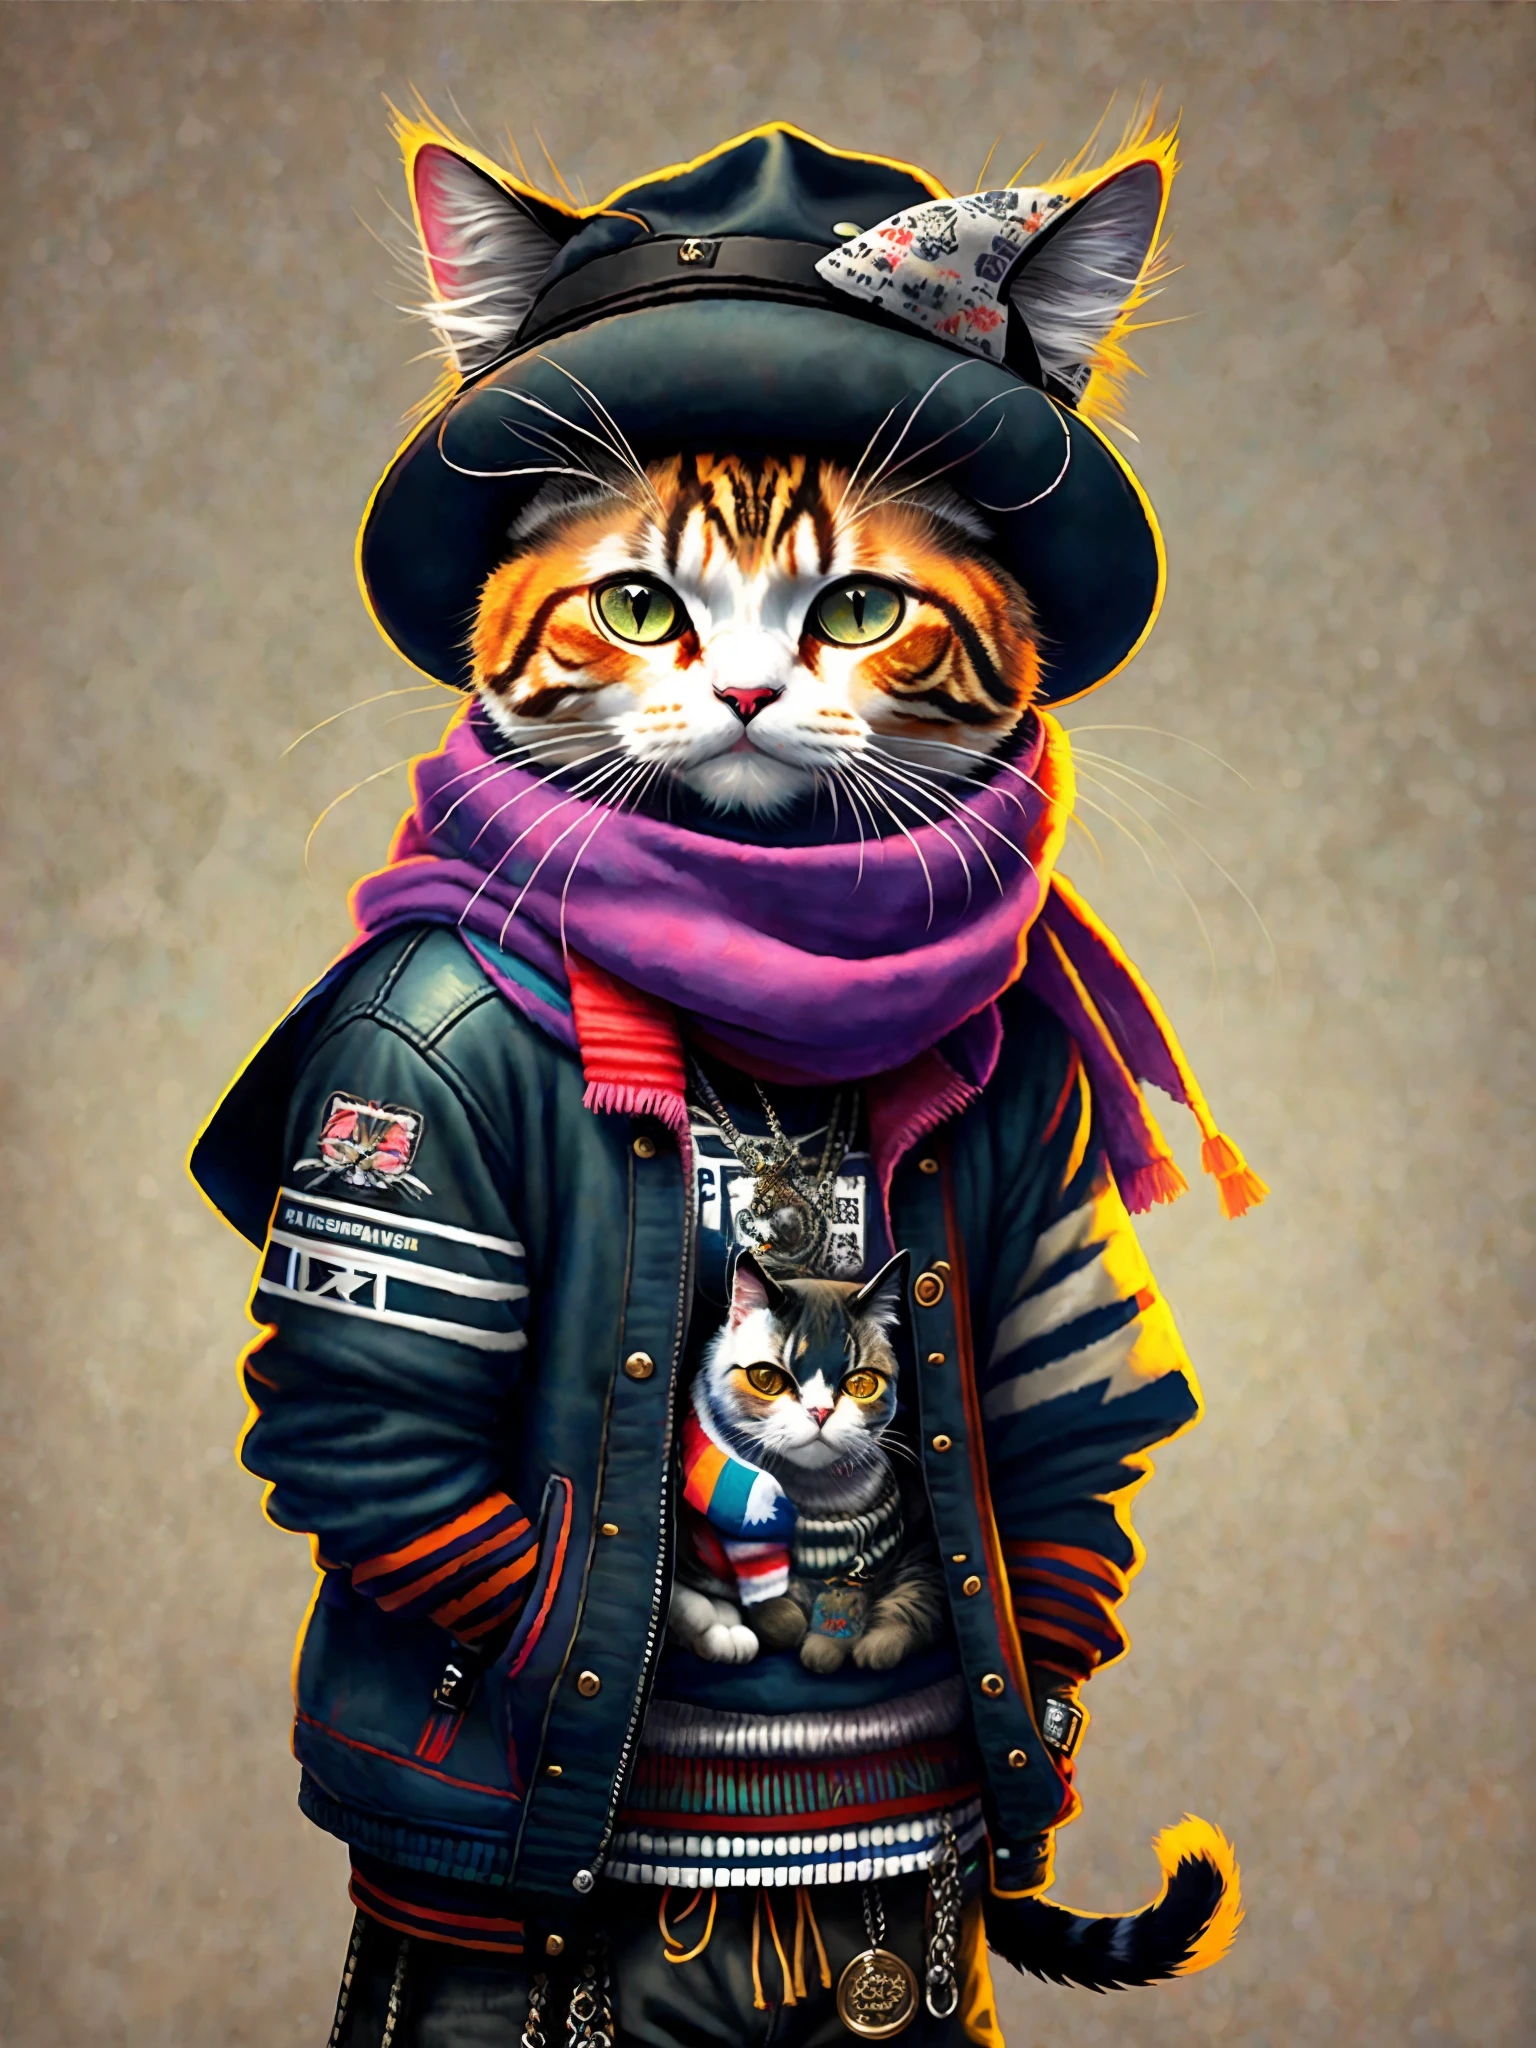 uma pintura de um gato usando chapéu e lenço, tendências na estação de arte, vestido com roupas punk, renderização hiper-realista detalhada, membro de gangue britânica, estilo de rua, pose intimidante, planeta dos gatos, roupas com moda, urban samurai, Miau, características eslavas ocidentais, 8 1 5